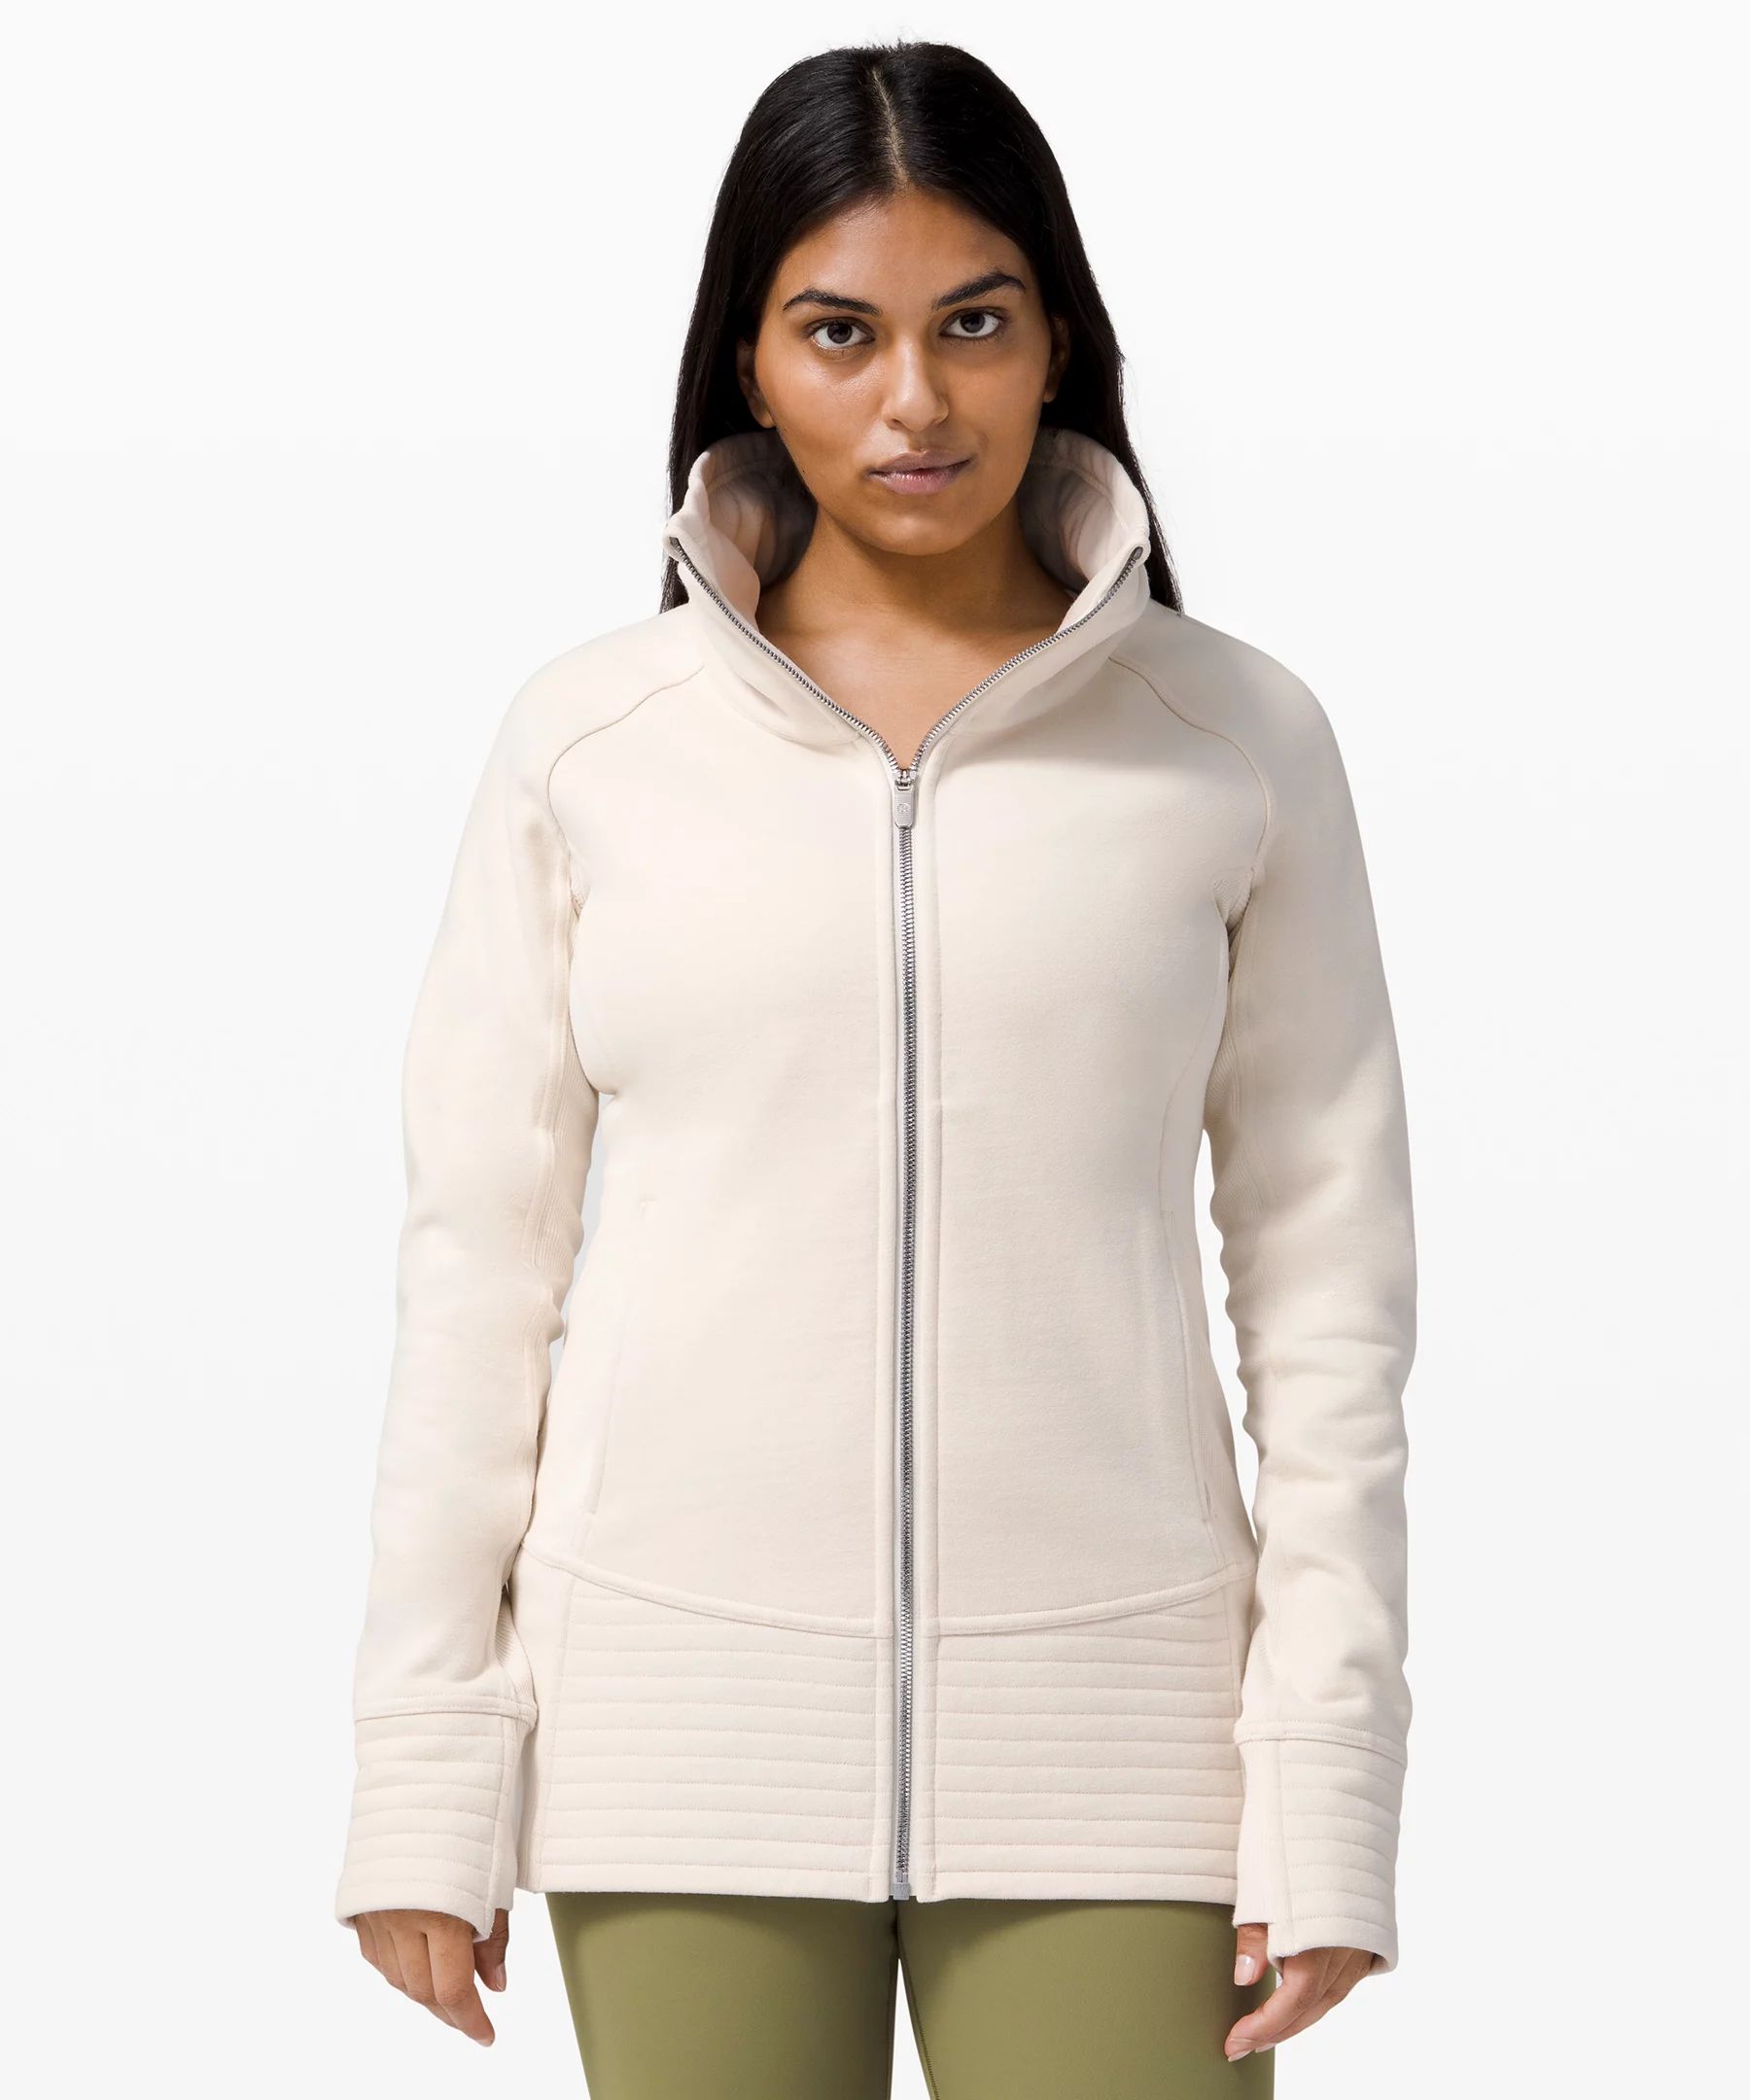 Radiant Jacket | Women's Jackets + Outerwear | lululemon | Lululemon (US)